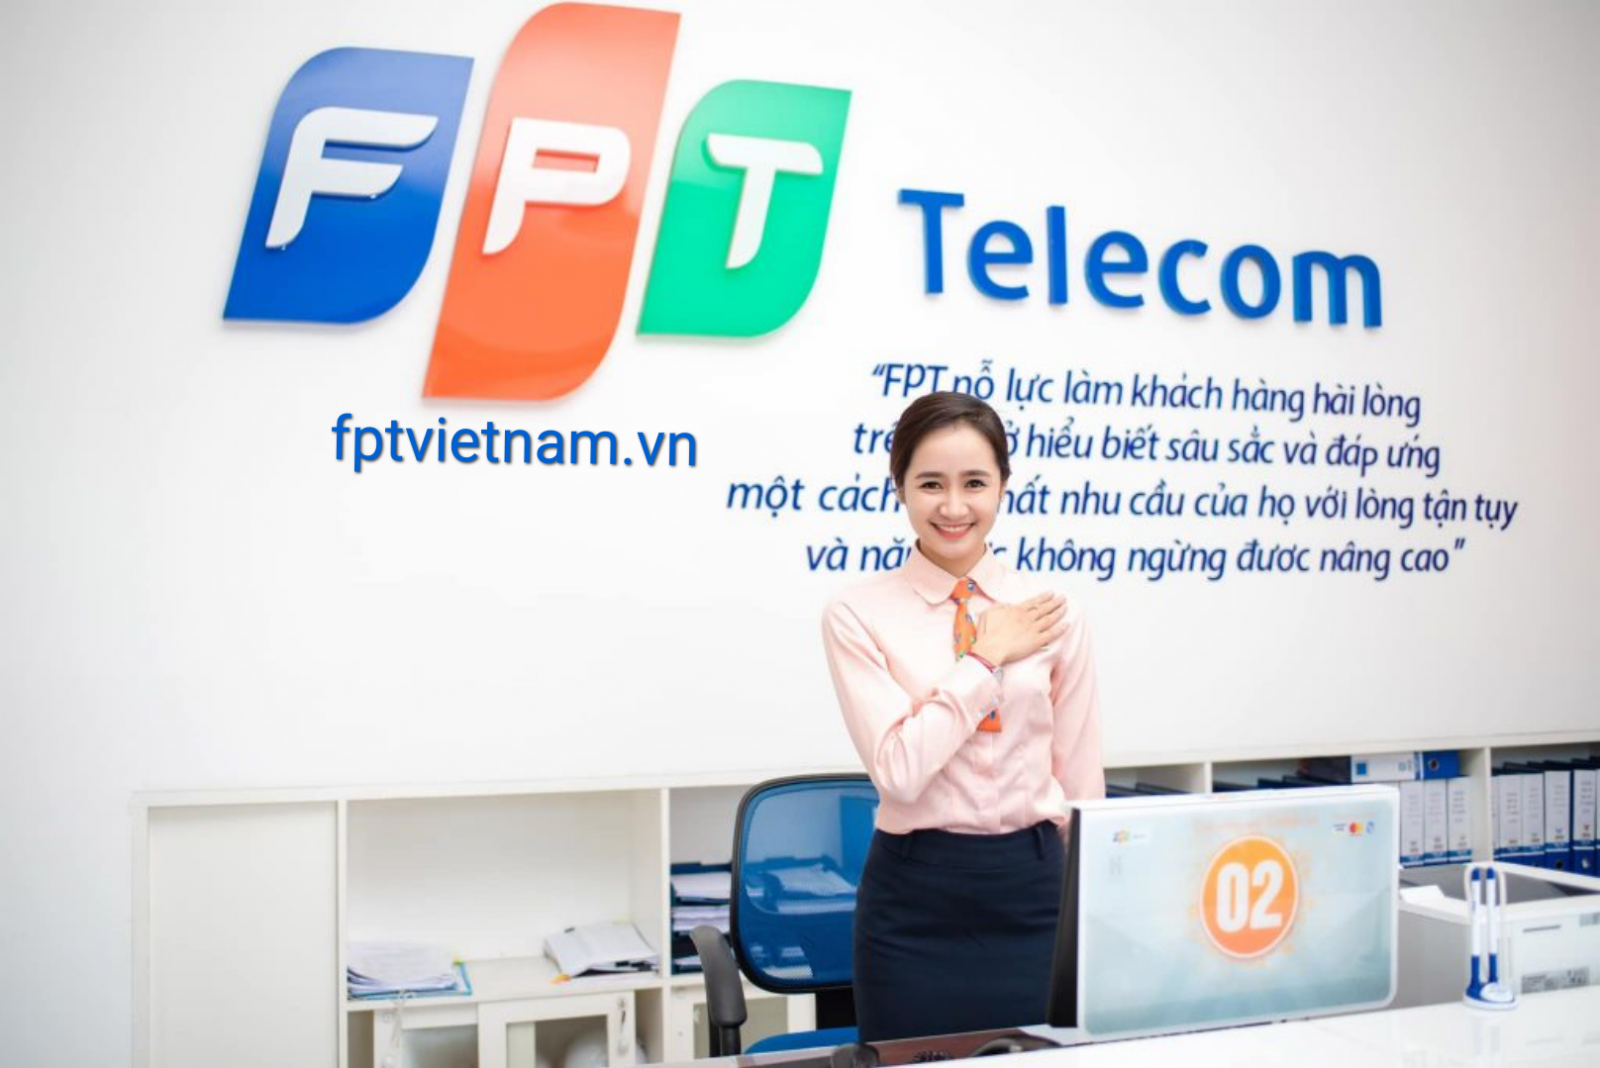 dịch vụ fpt telecom Nghệ An